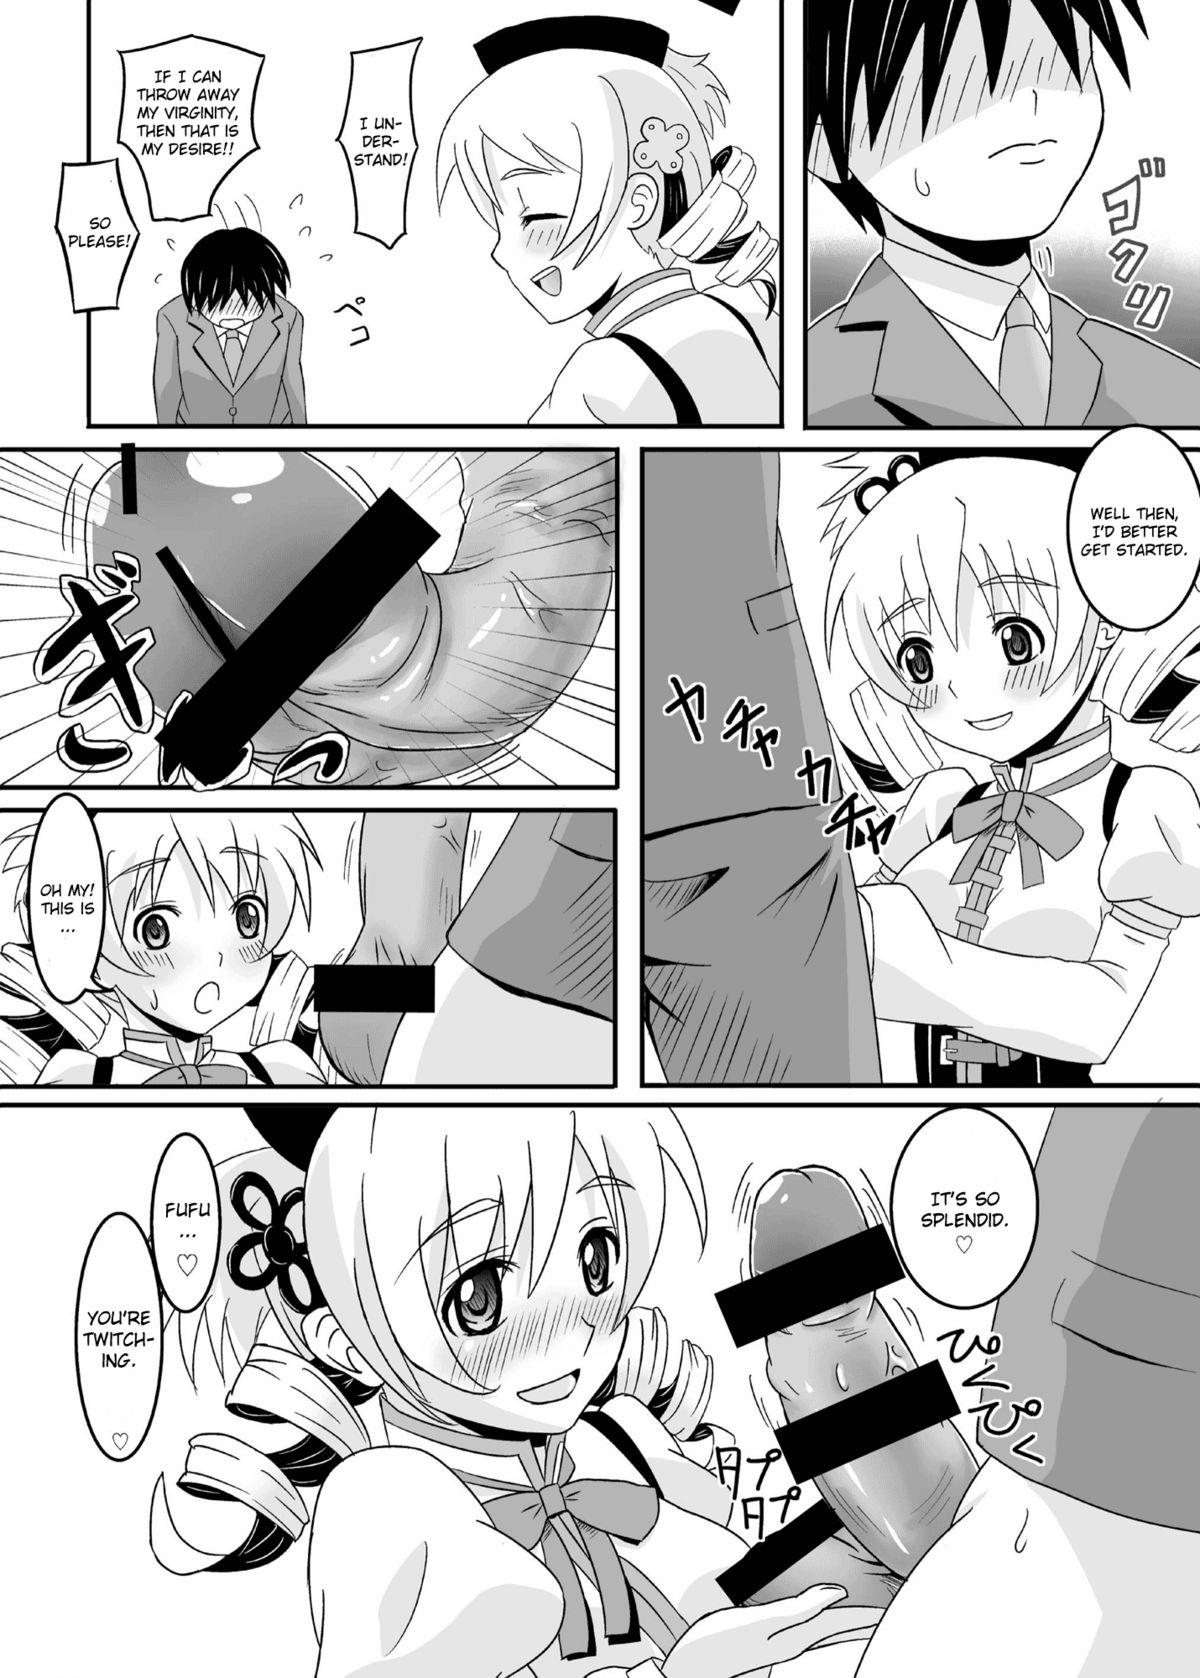 Punished Osewani narimasu Mami-san! - Puella magi madoka magica Cougars - Page 8